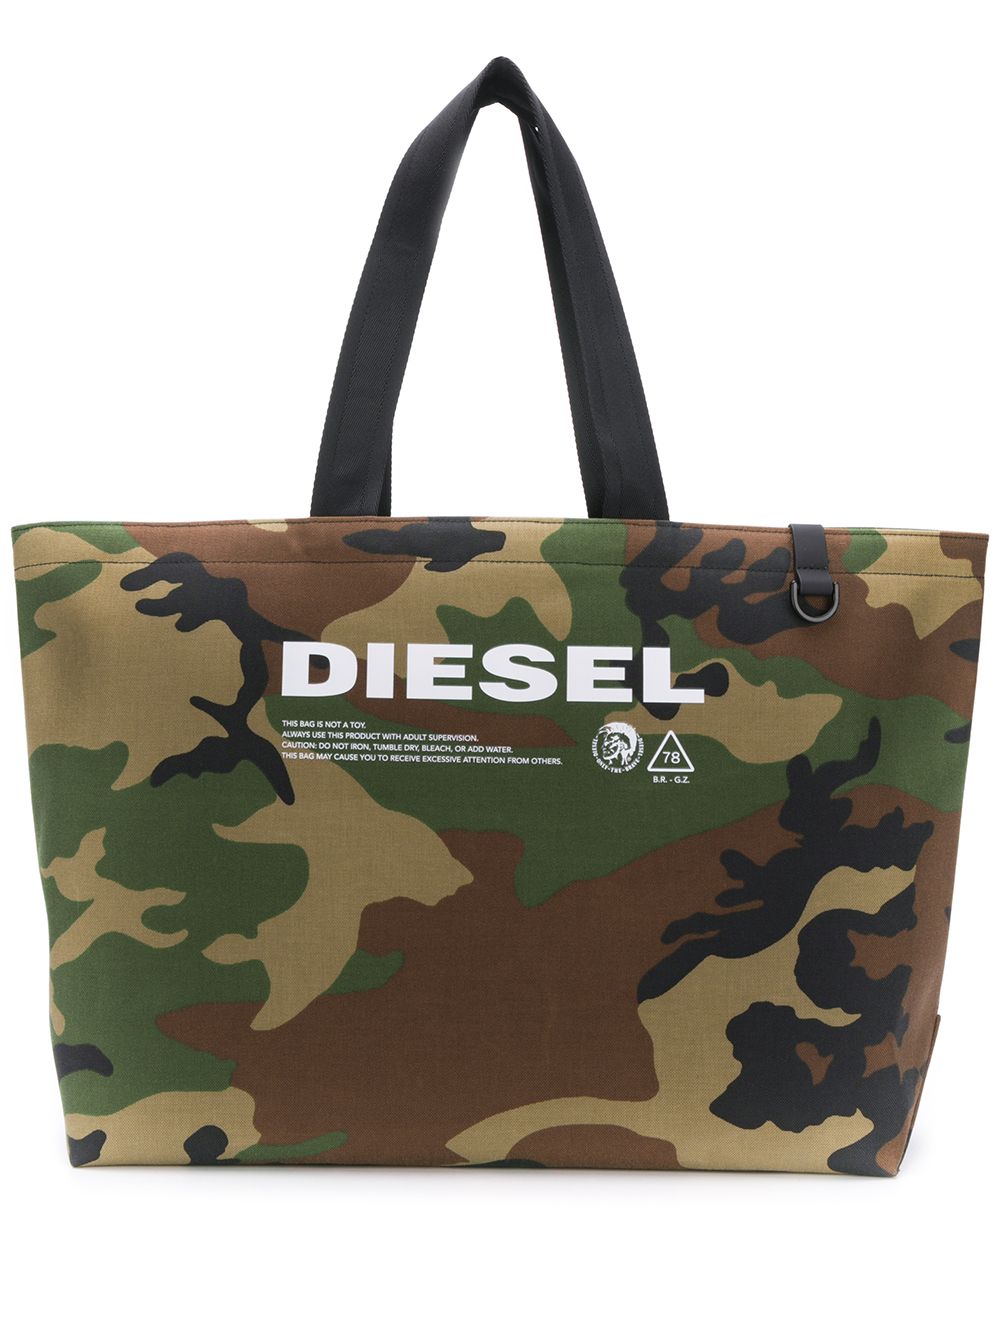 фото Diesel сумка-тоут с камуфляжным принтом